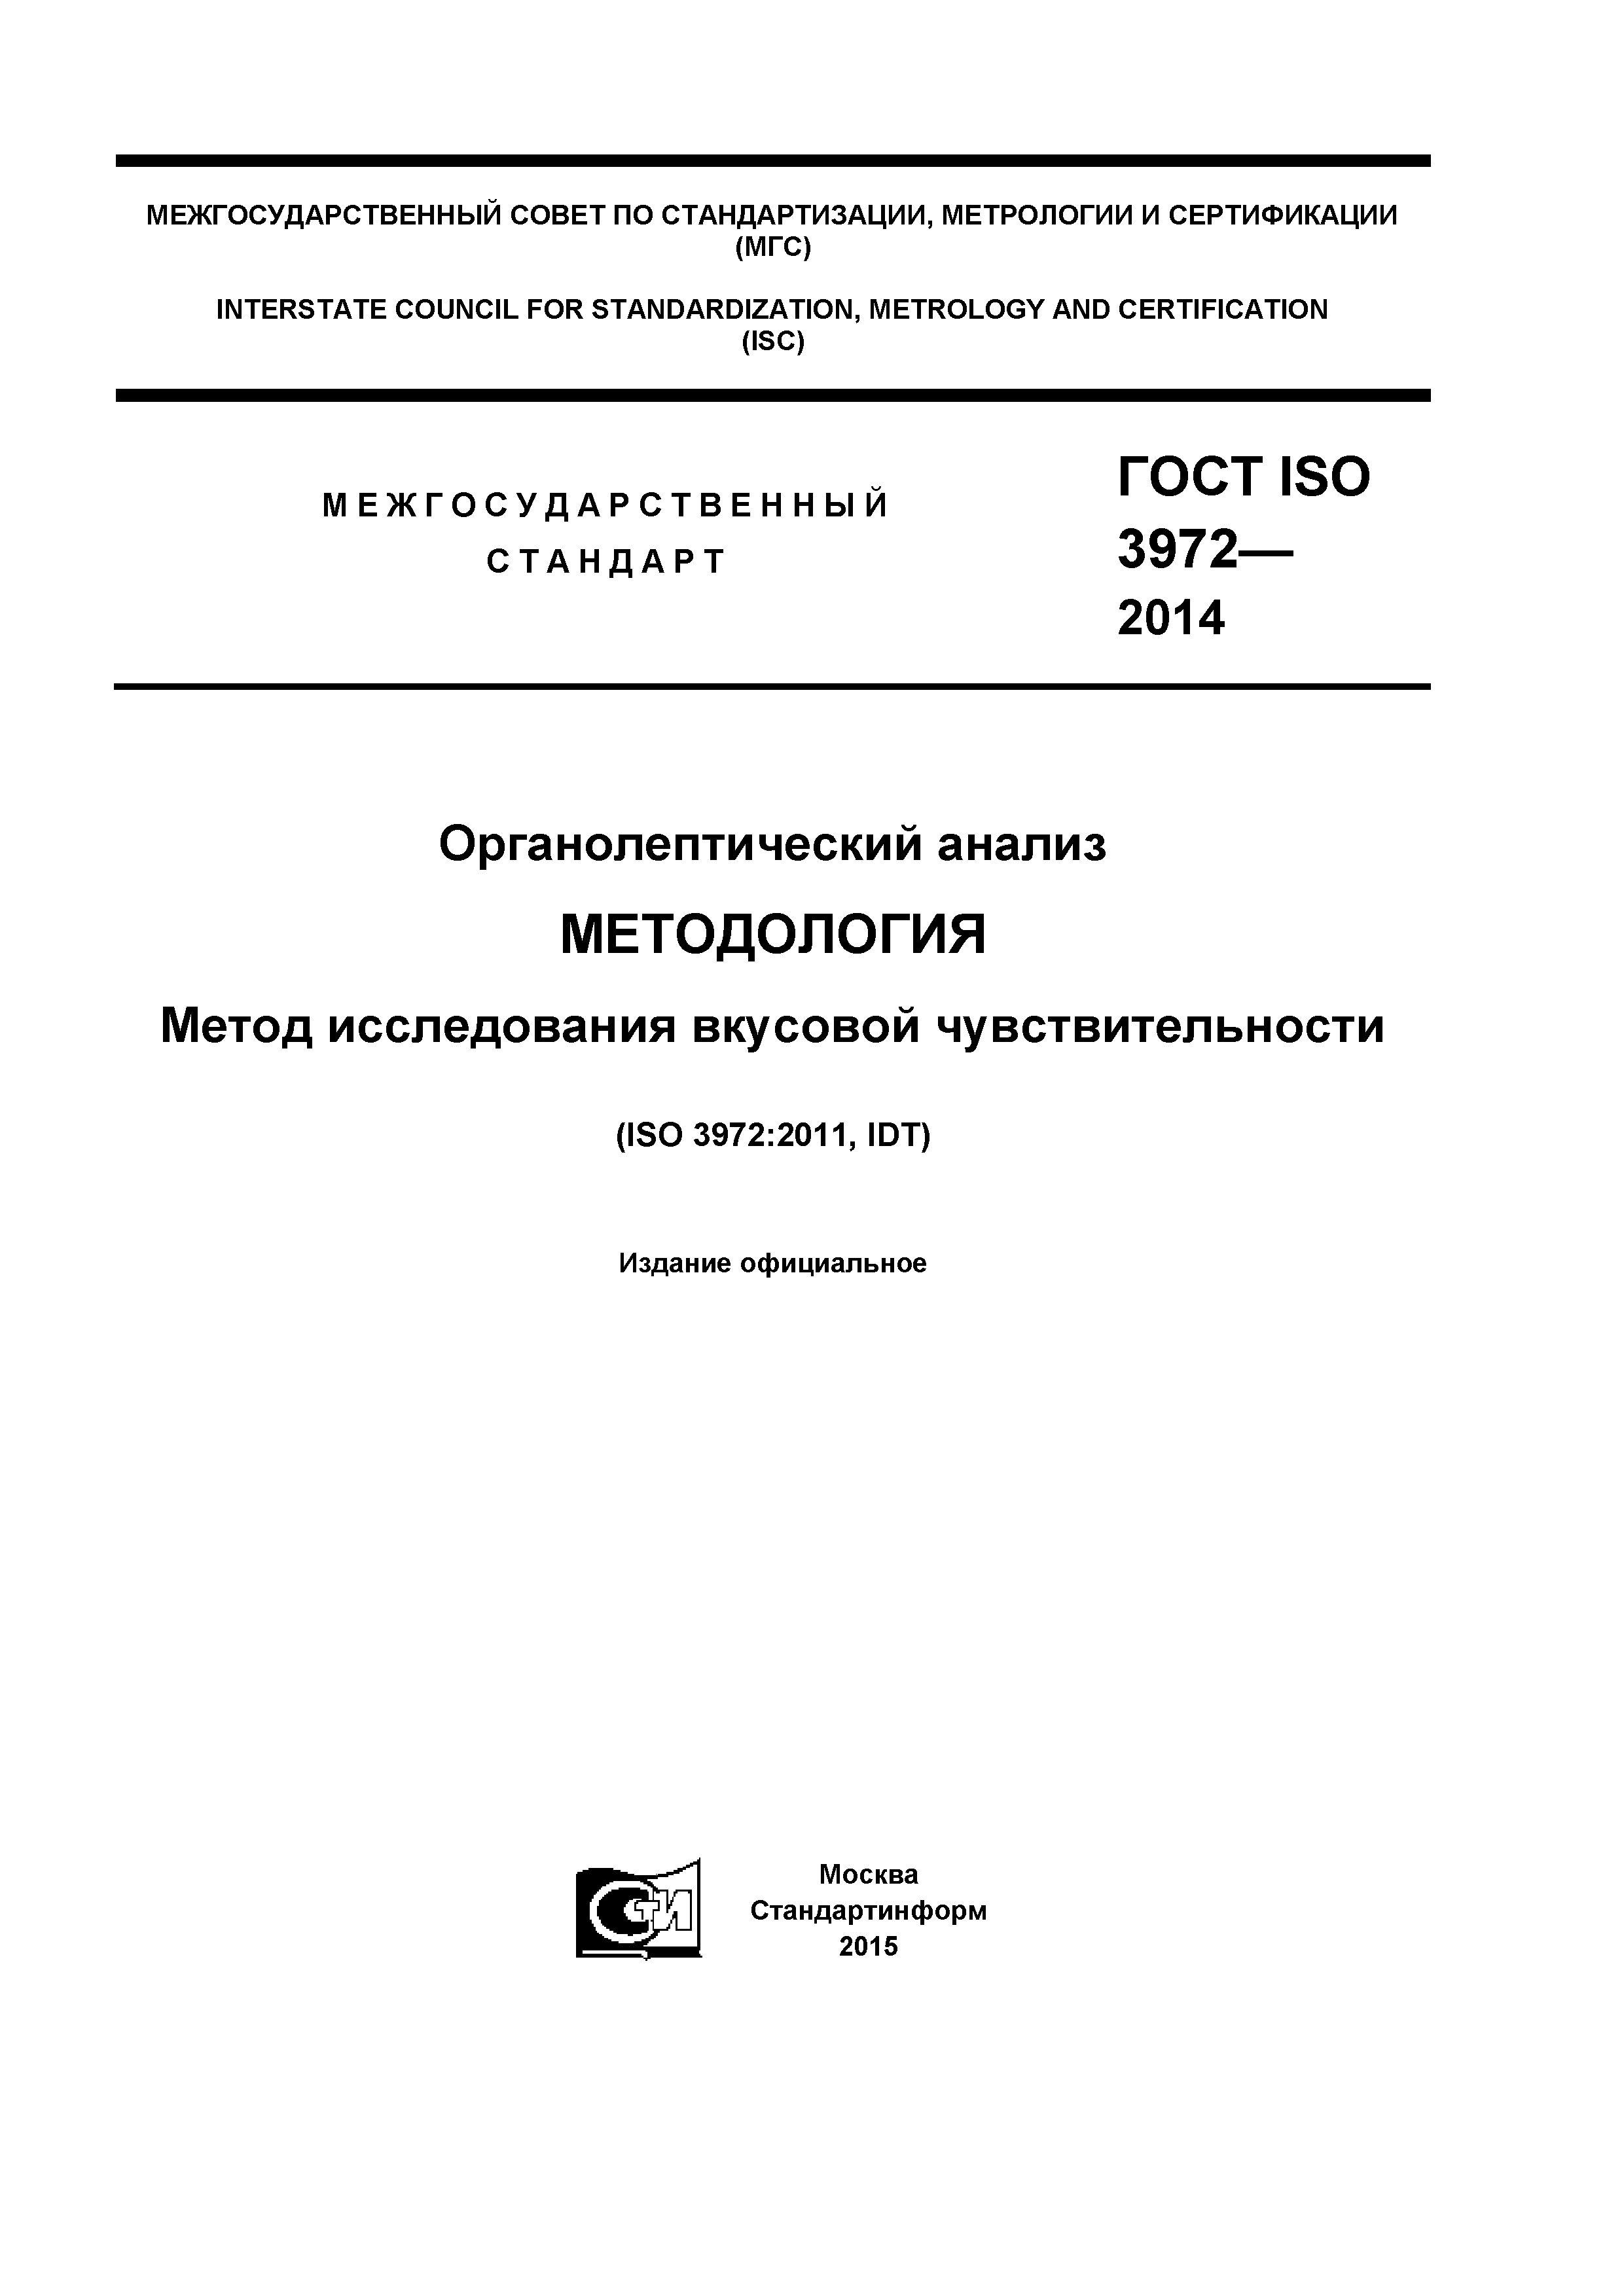 ГОСТ ISO 3972-2014